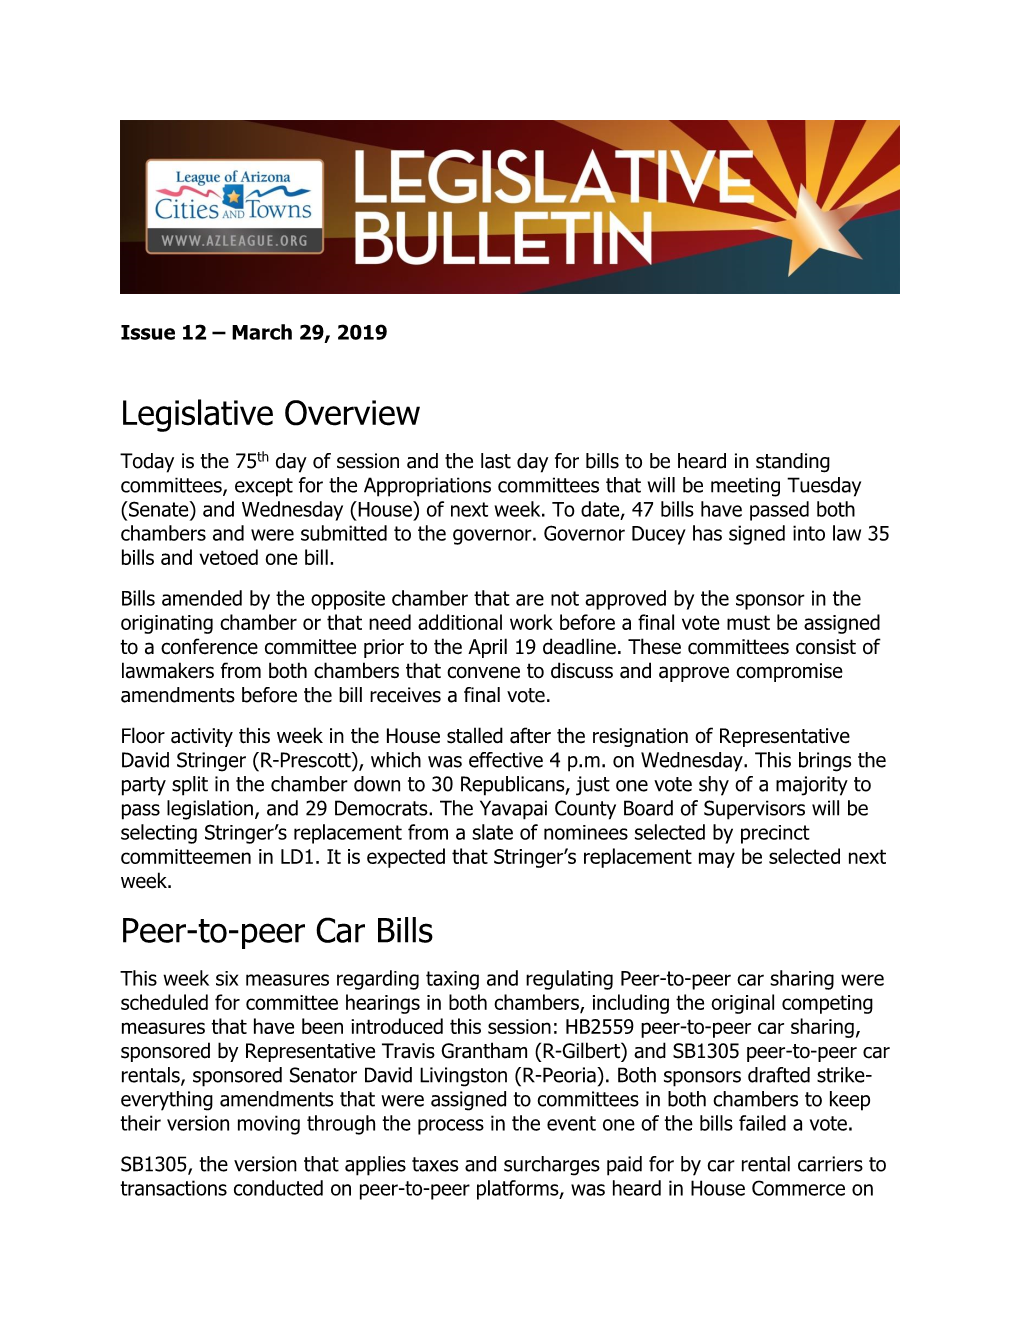 Legislative Overview Peer-To-Peer Car Bills